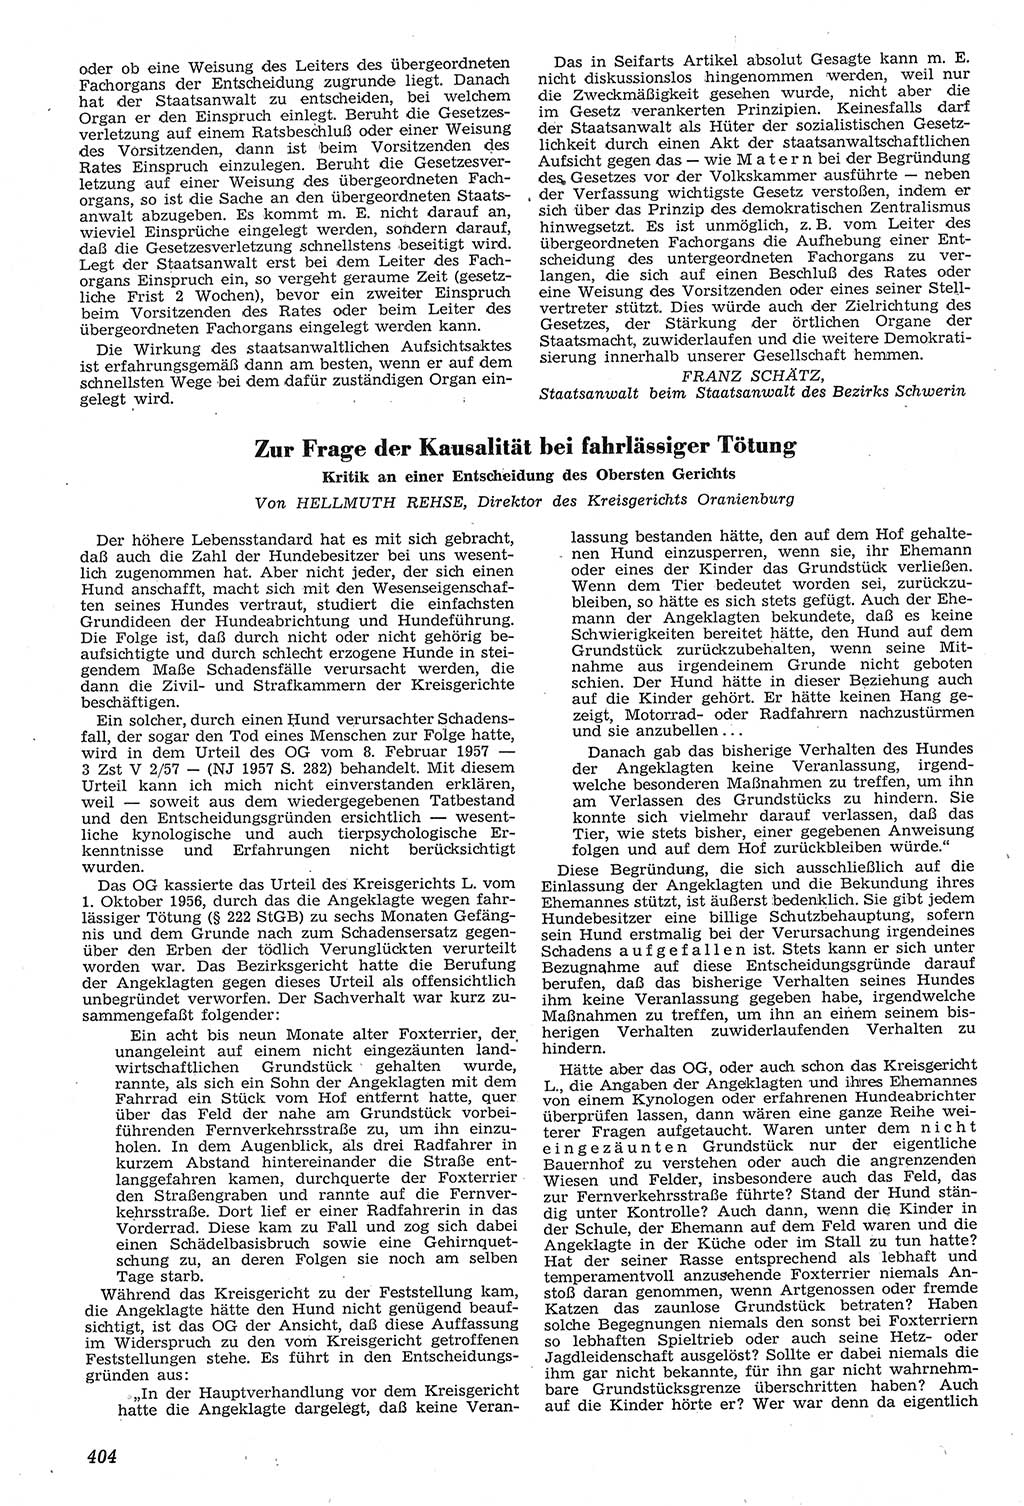 Neue Justiz (NJ), Zeitschrift für Recht und Rechtswissenschaft [Deutsche Demokratische Republik (DDR)], 11. Jahrgang 1957, Seite 404 (NJ DDR 1957, S. 404)